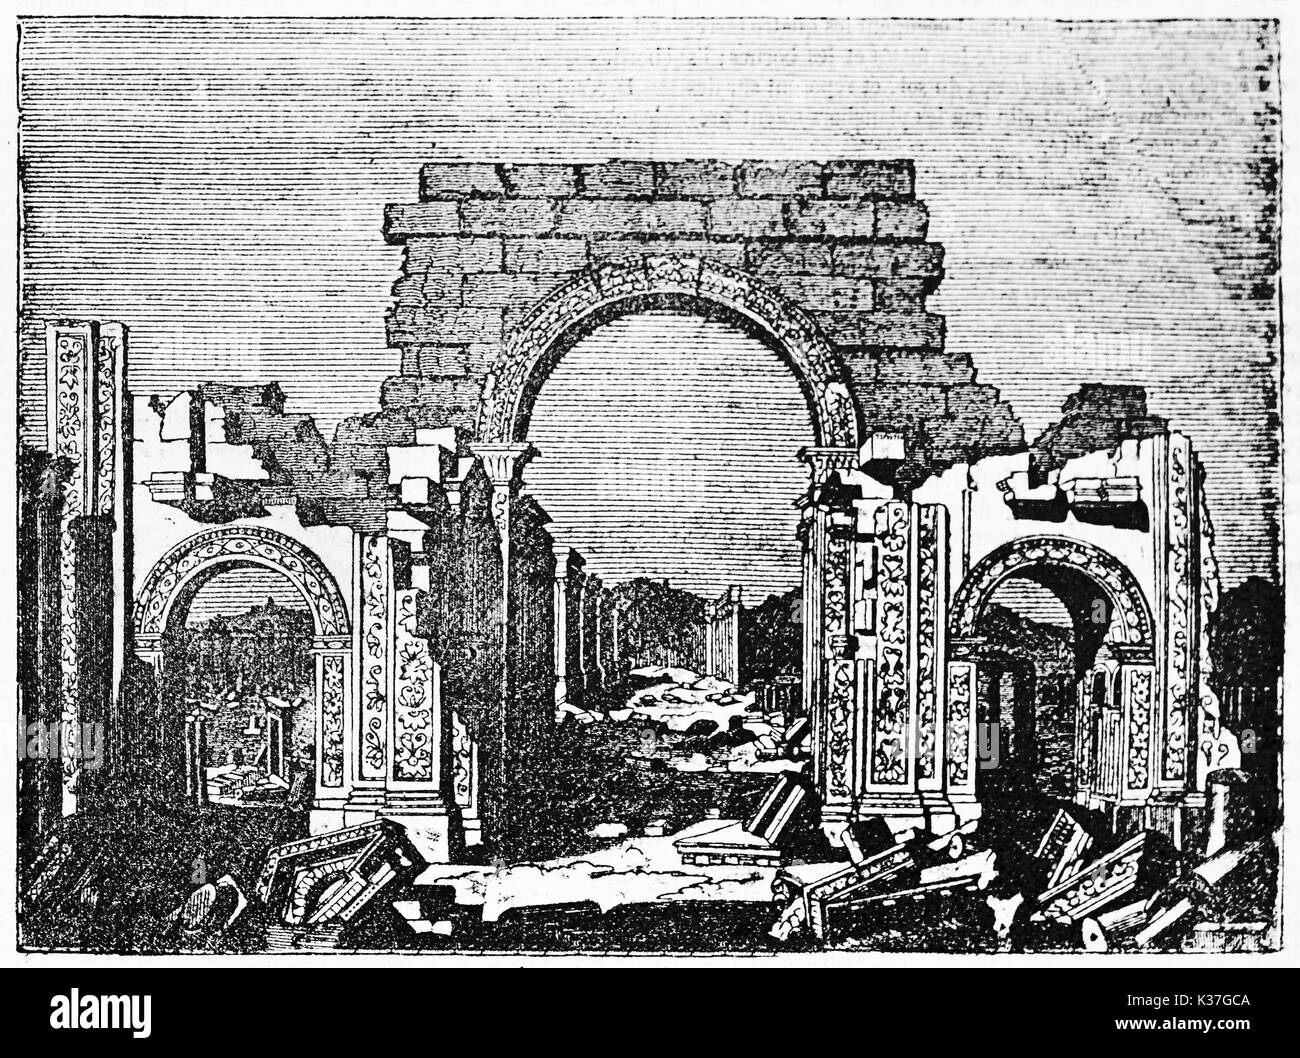 Palmyre arc monumental, en Syrie, avec son architecture arabe typique des formes (récemment détruites par l'Est). Vieille Illustration d'auteur non identifié, publié le Magasin Pittoresque, Paris, 1834 Banque D'Images